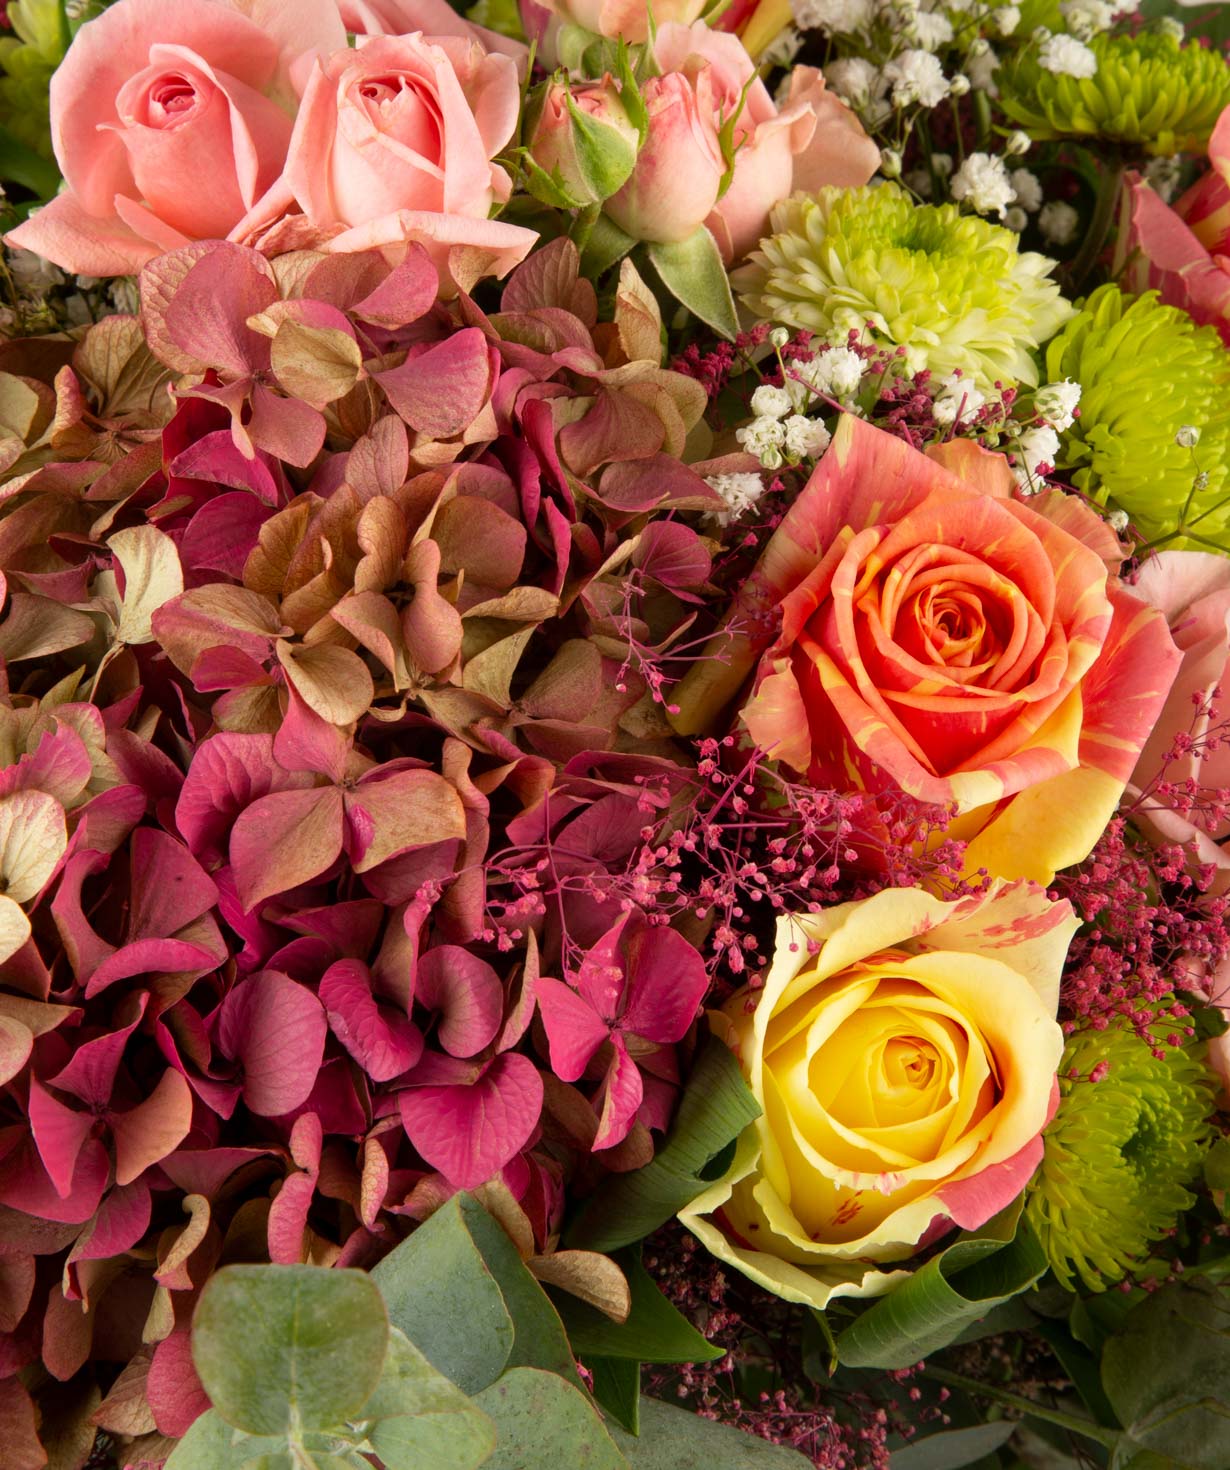 Ծաղկեփունջ «Նորթ Բեյ» վարդերով, հորտենզիաներով և քրիզանթեմներով